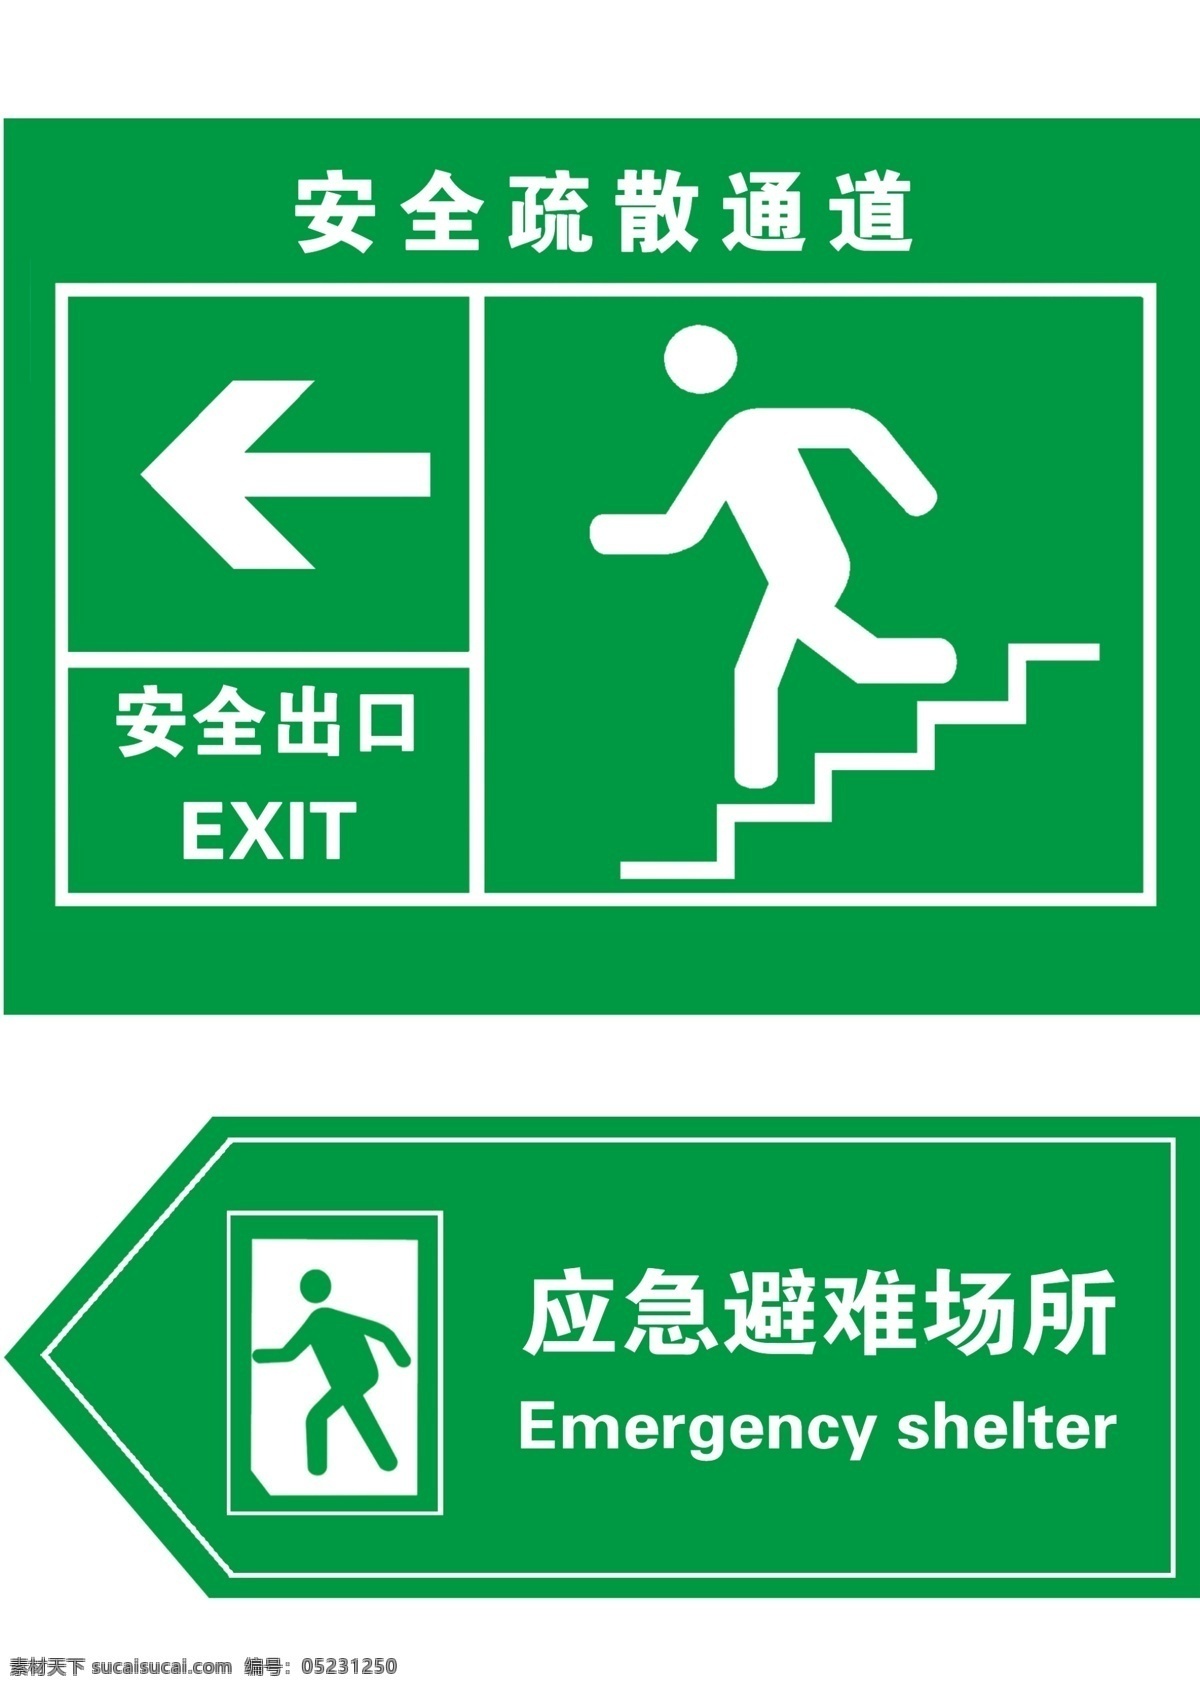 安全出口 安全 出口 指示牌 标识标志图标 标志设计 公共标识标志 广告设计模板 箭头 楼梯 模板下载 安全疏散通道 应急避难场所 源文件